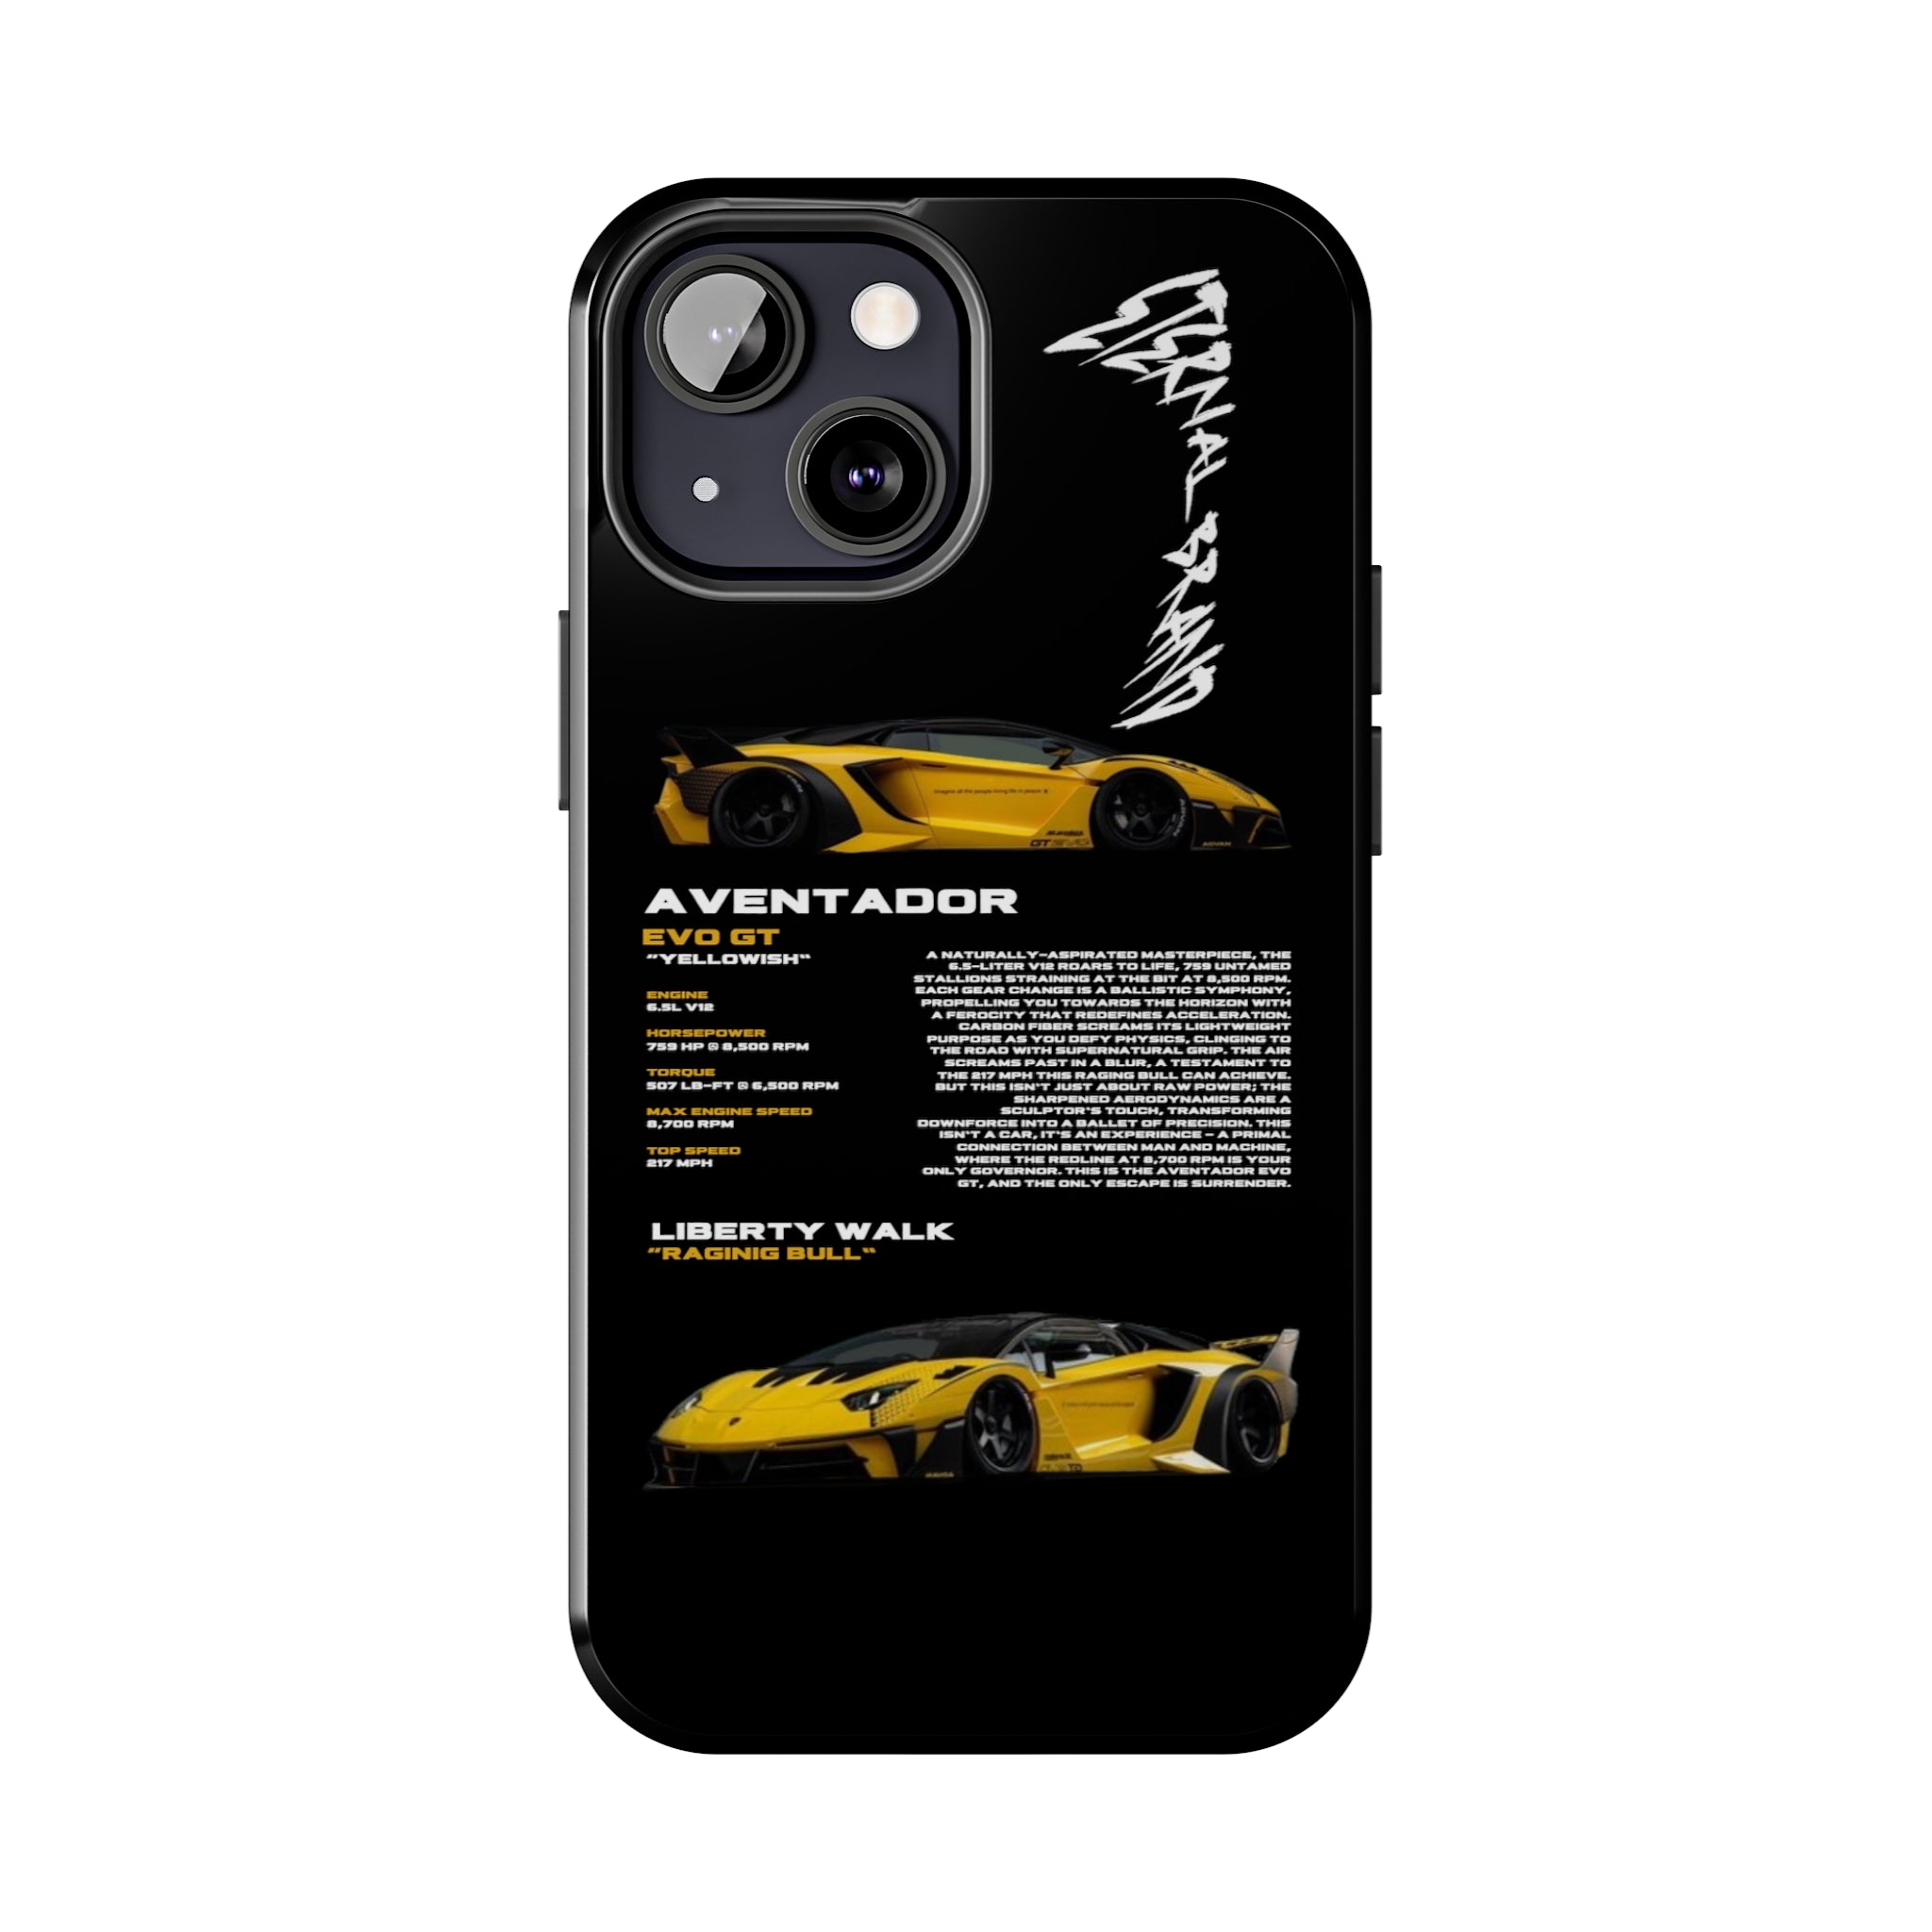 Aventador EVO GT "Yellowish" "Noir"